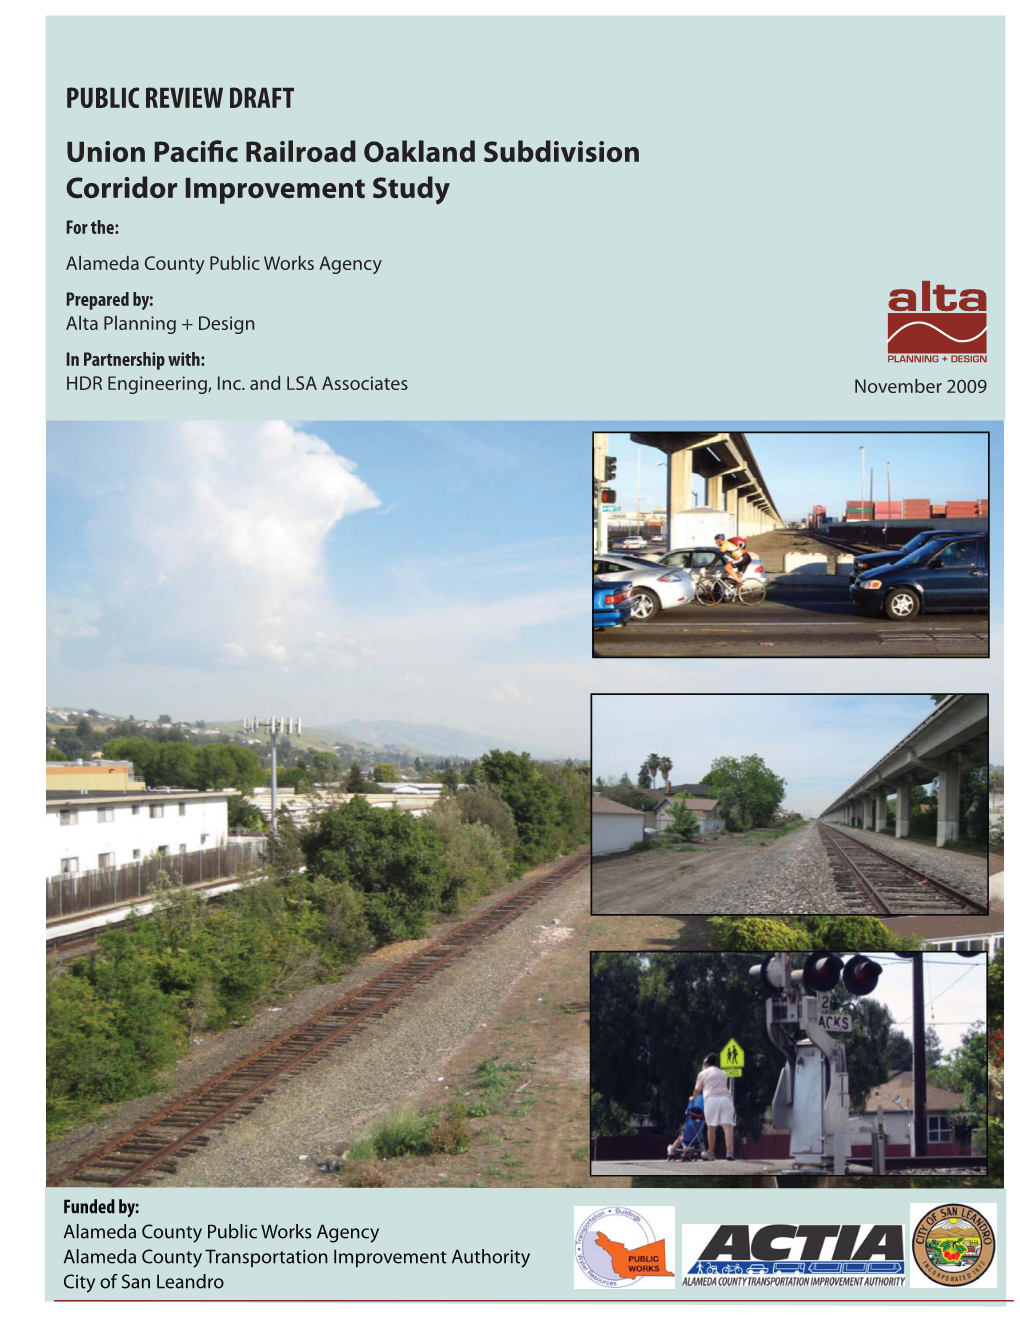 The Union Pacific Railroad Oakland Subdivision Corridor Improvement Study